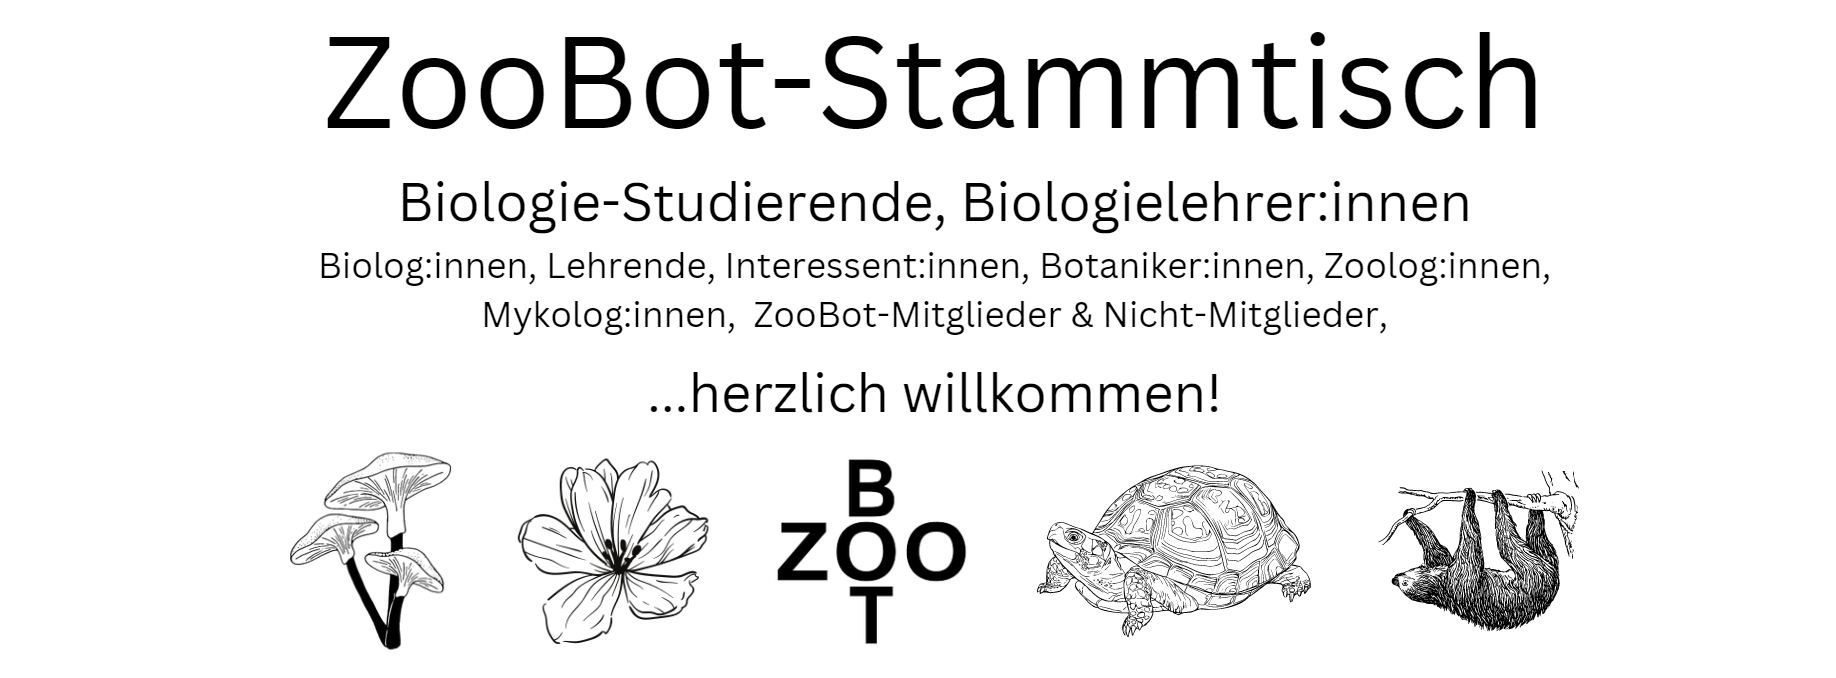 Wiener Weihnachts-ZooBot-Stammtisch am 06.12.23